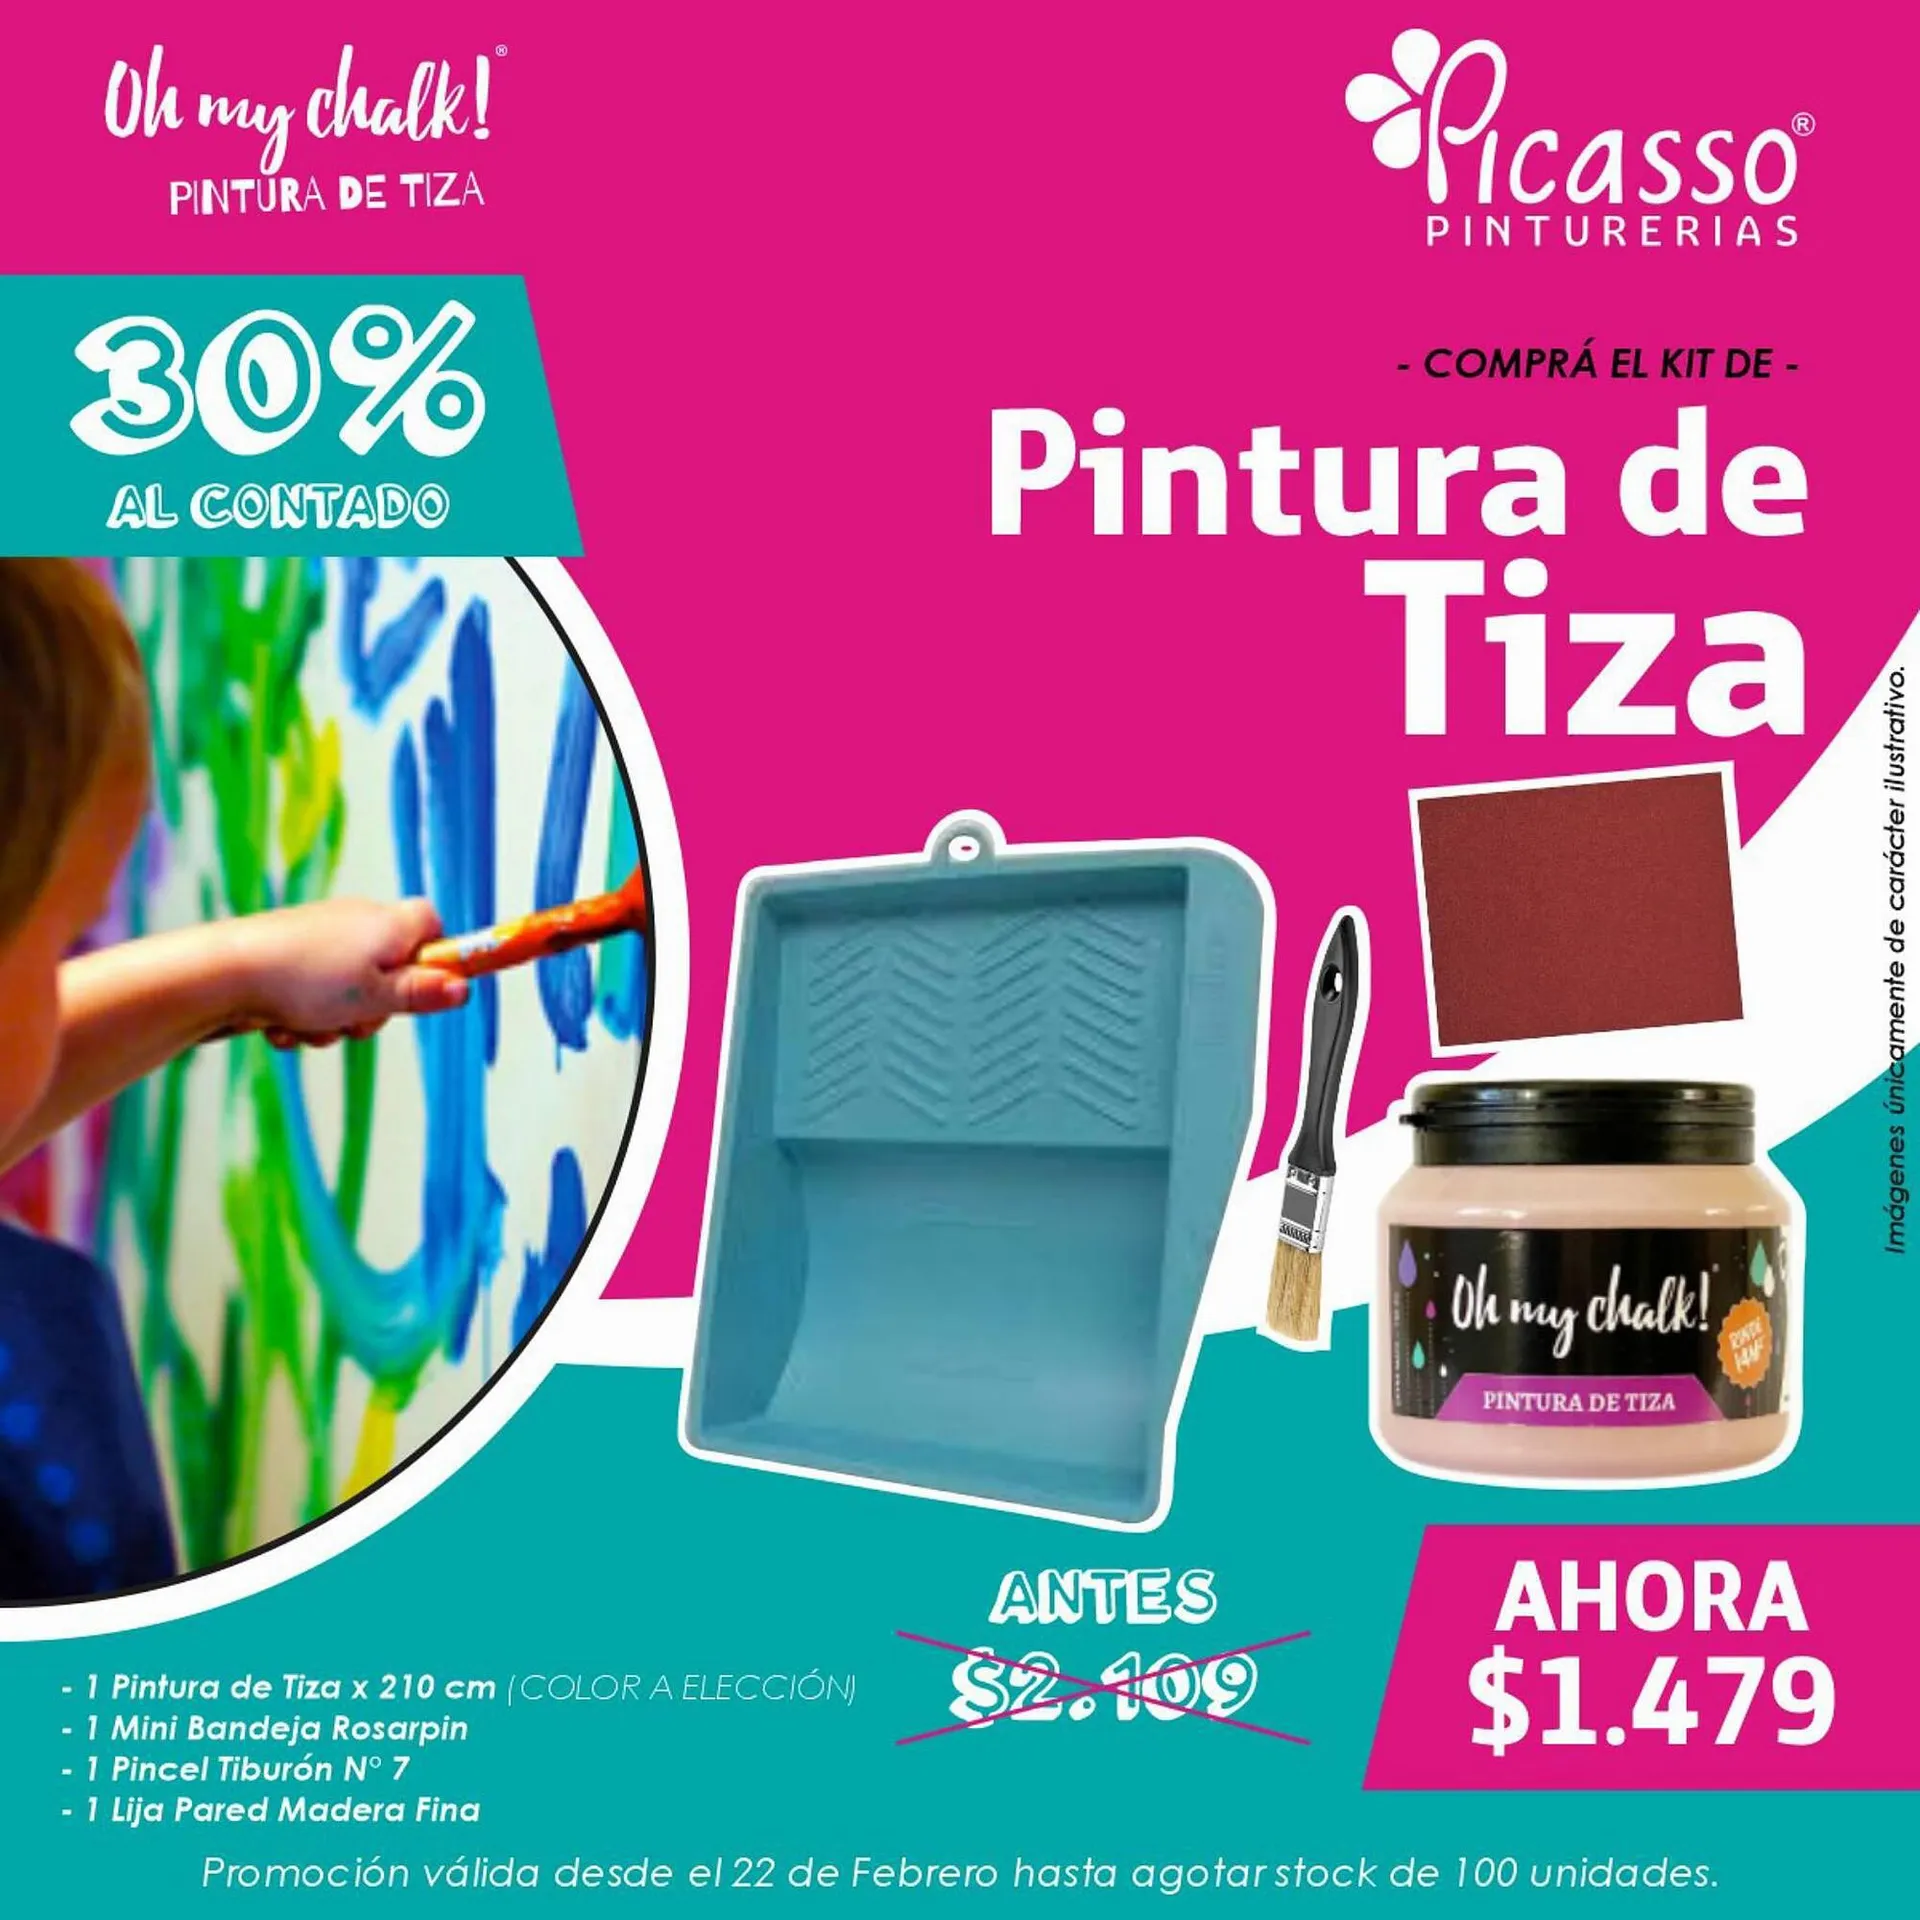 Catálogo Pinturerías Picasso - 2